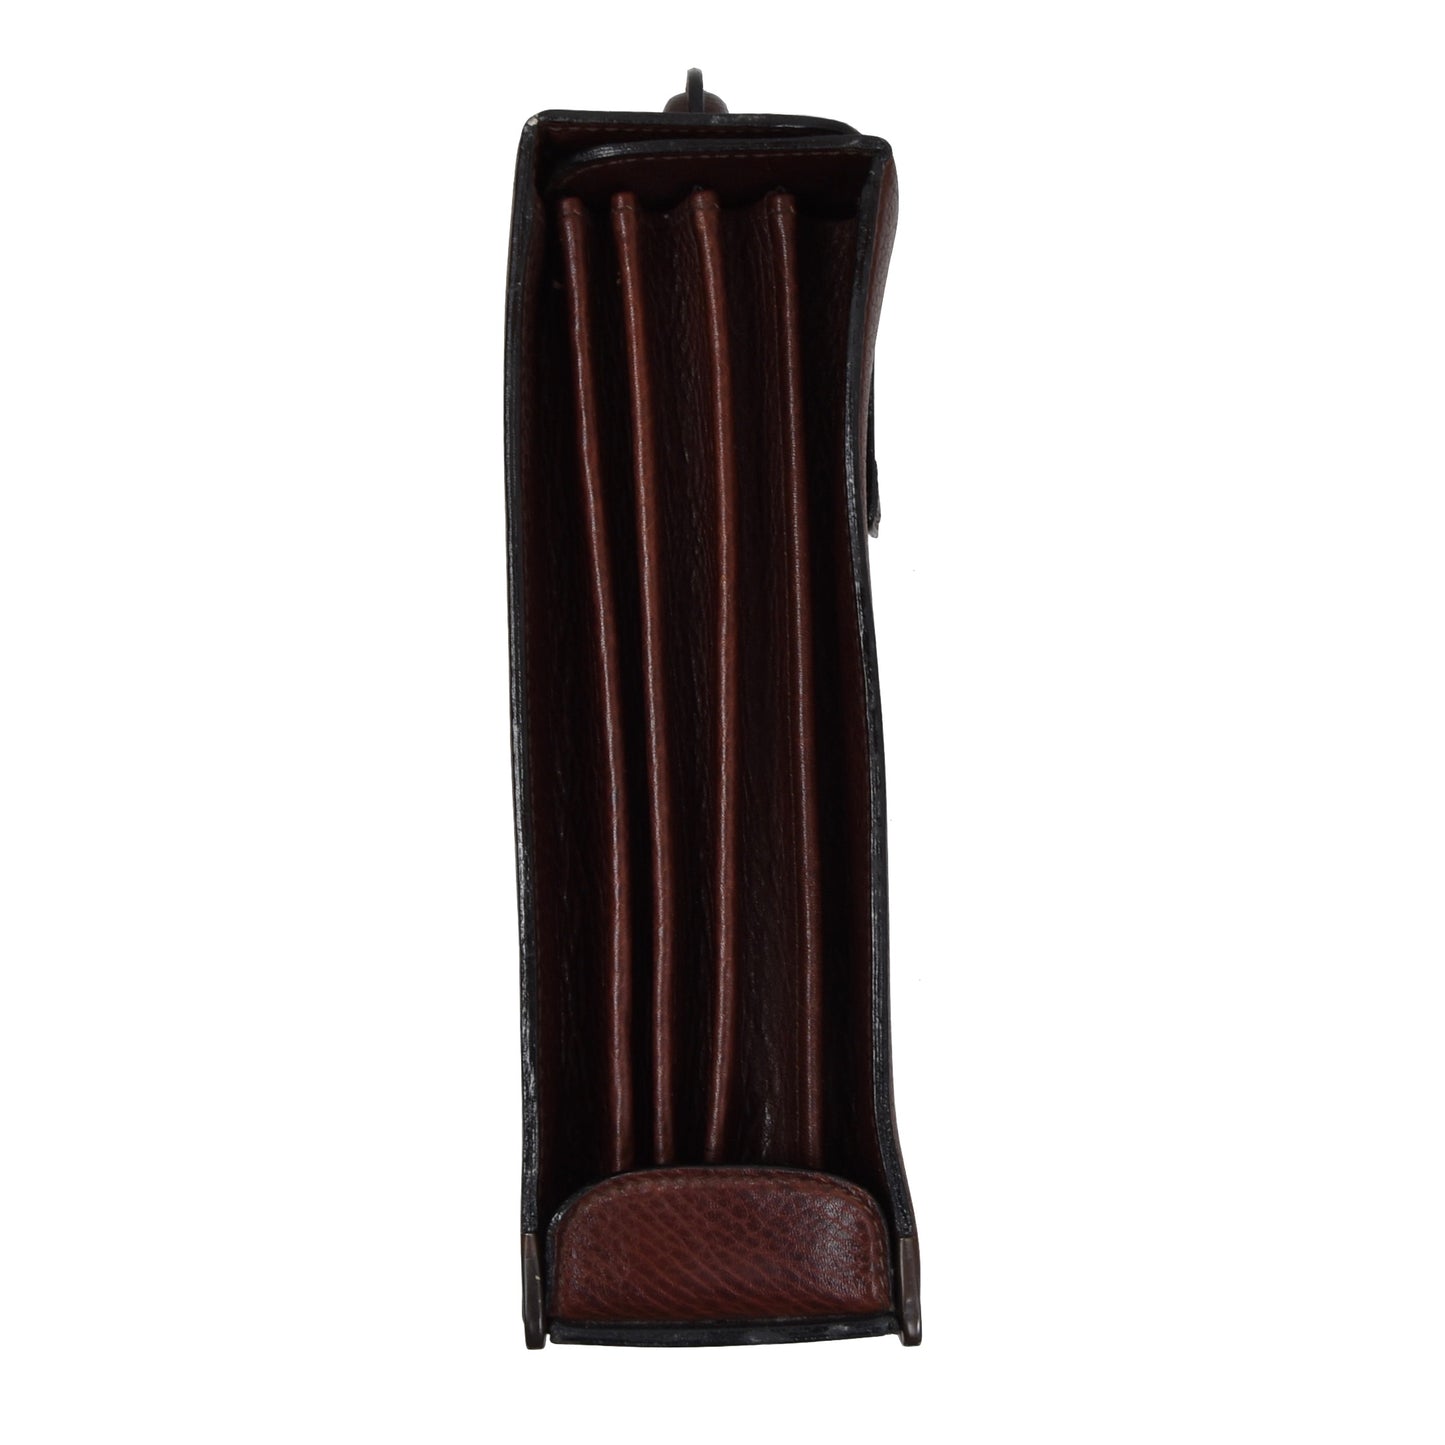 Lancel Paris Leather Briefcase - Burgundy-Brown